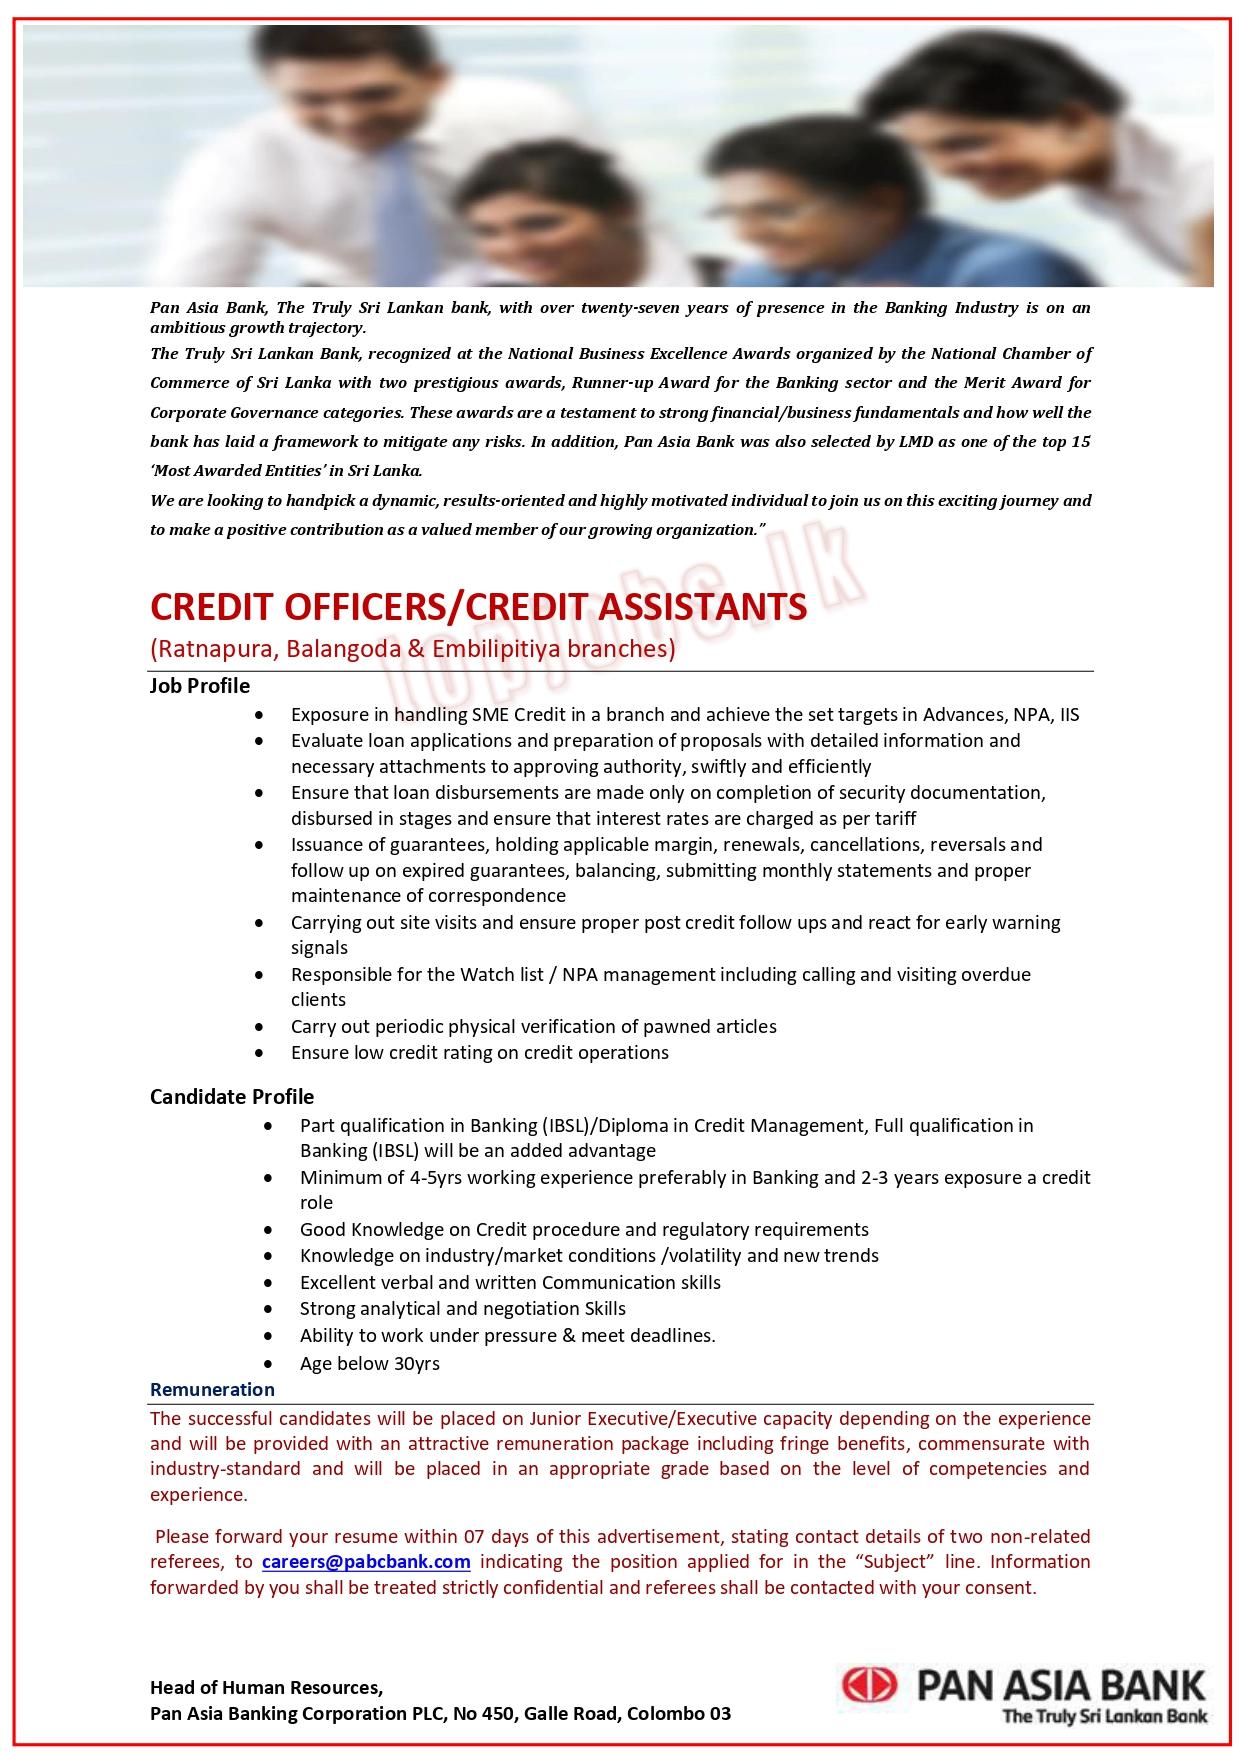 Credit Officers / Credit Assistant Vacancy at Embilipitiya Pan Asia Bank Jobs Vacancies